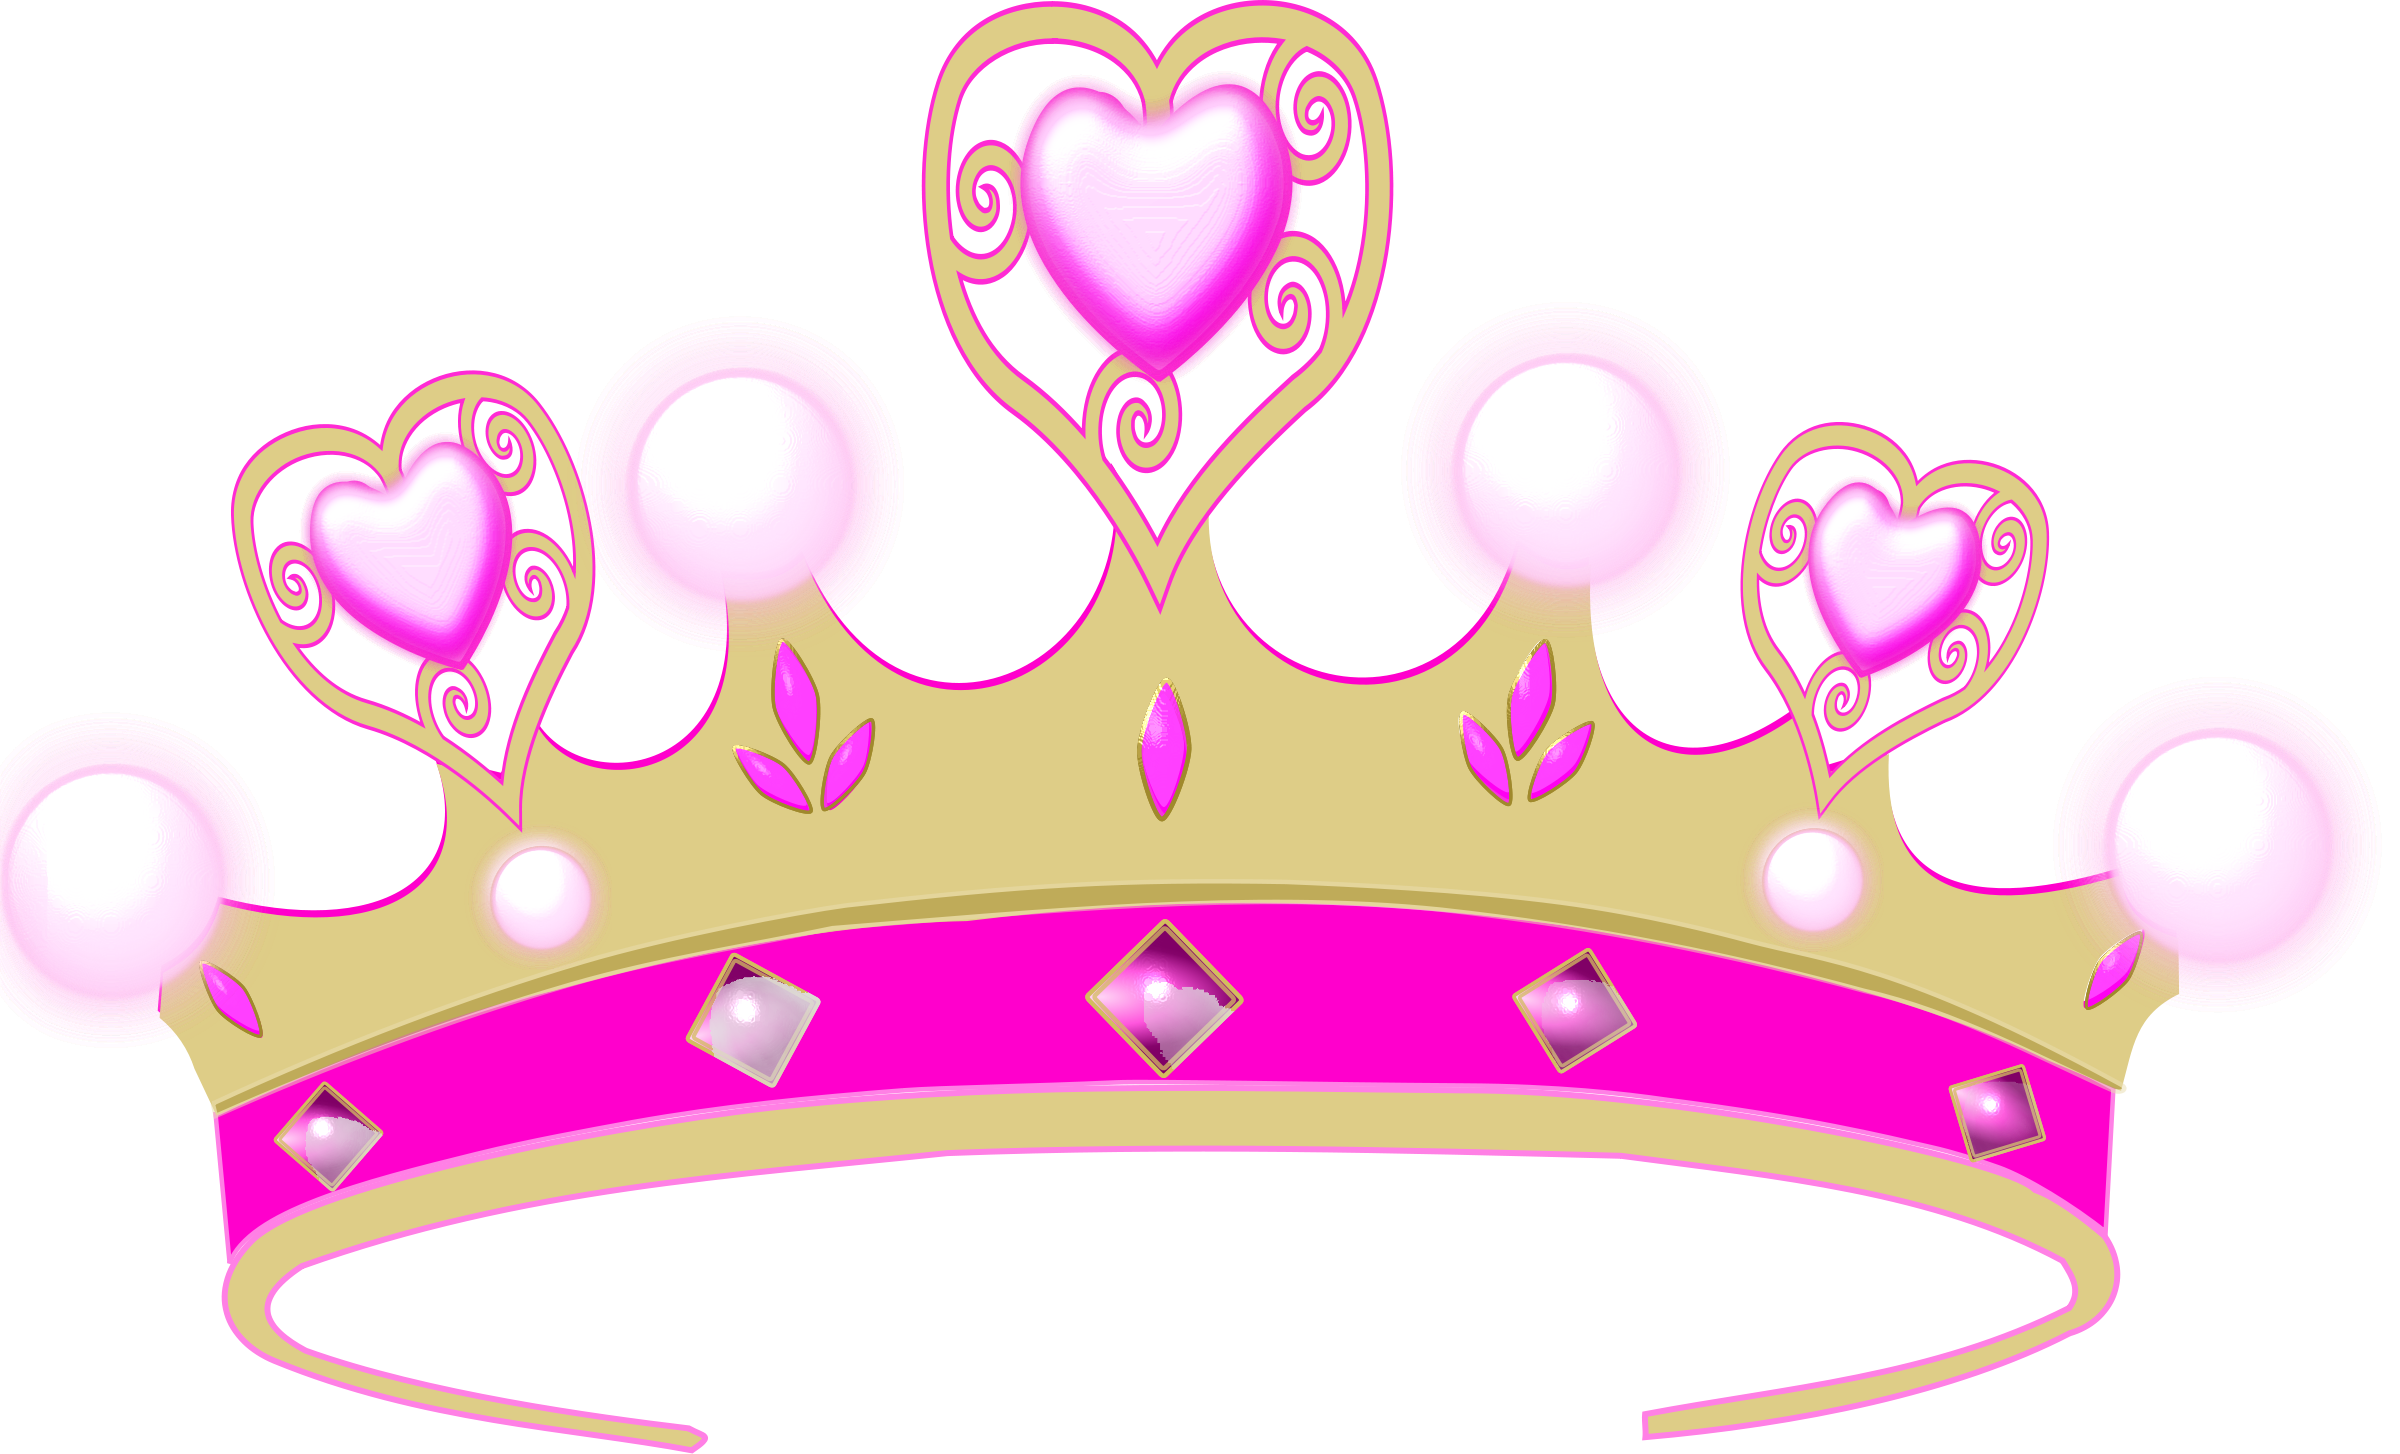 Pink queen clipart panda. Crown clip art queen's